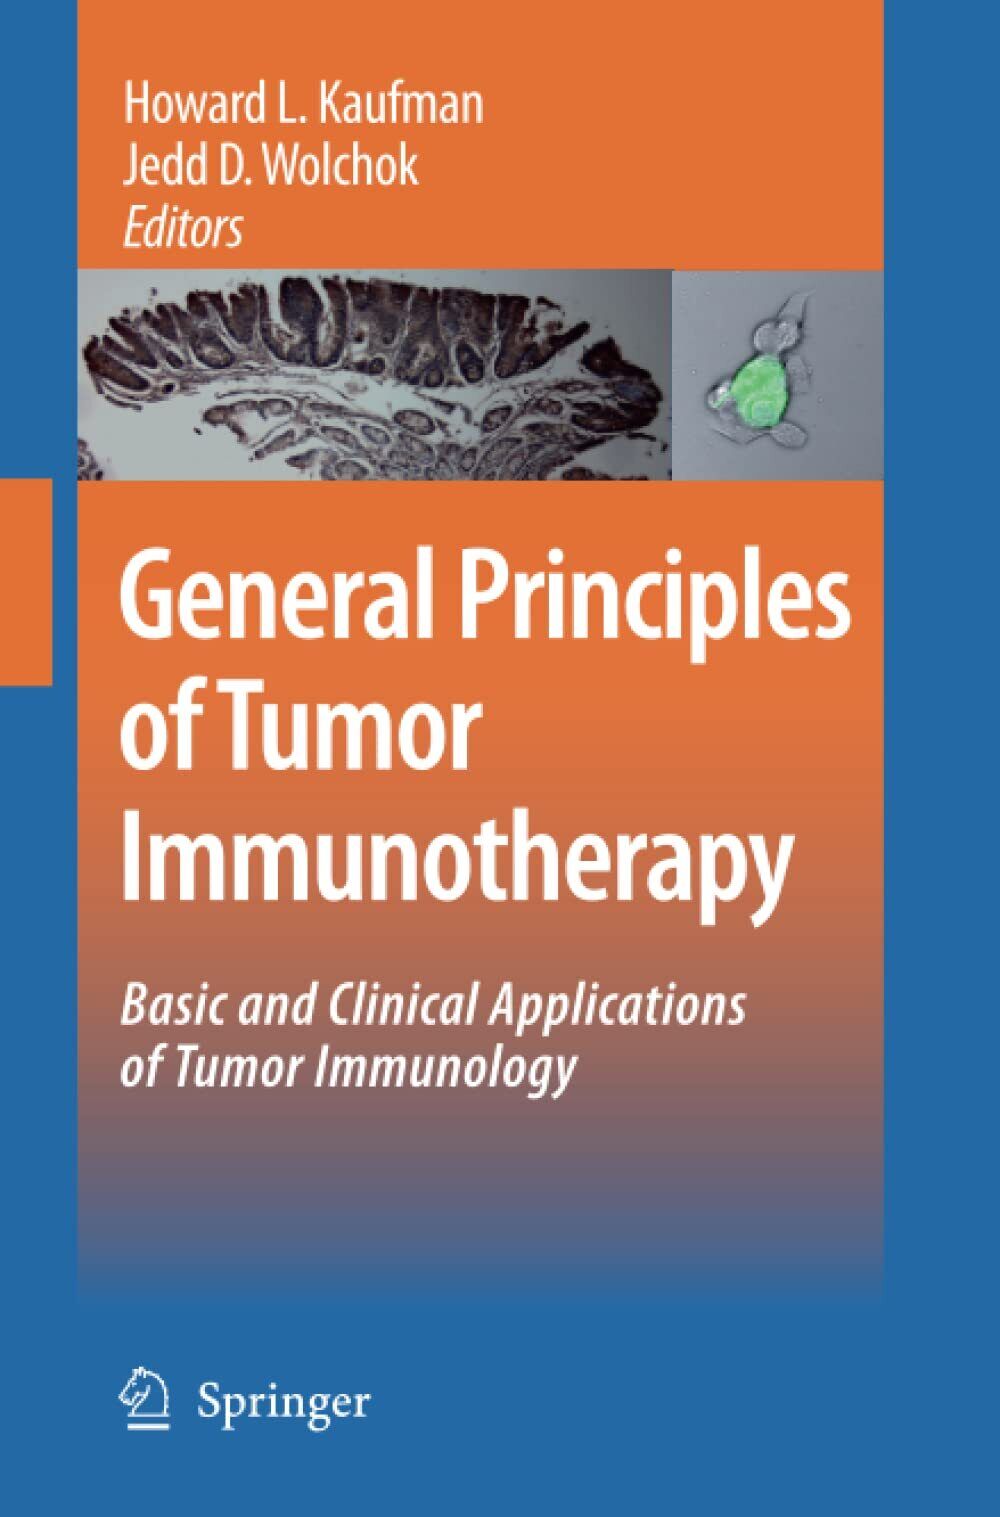 General Principles of Tumor Immunotherapy - Howard L. Kaufman - Springer, 2014